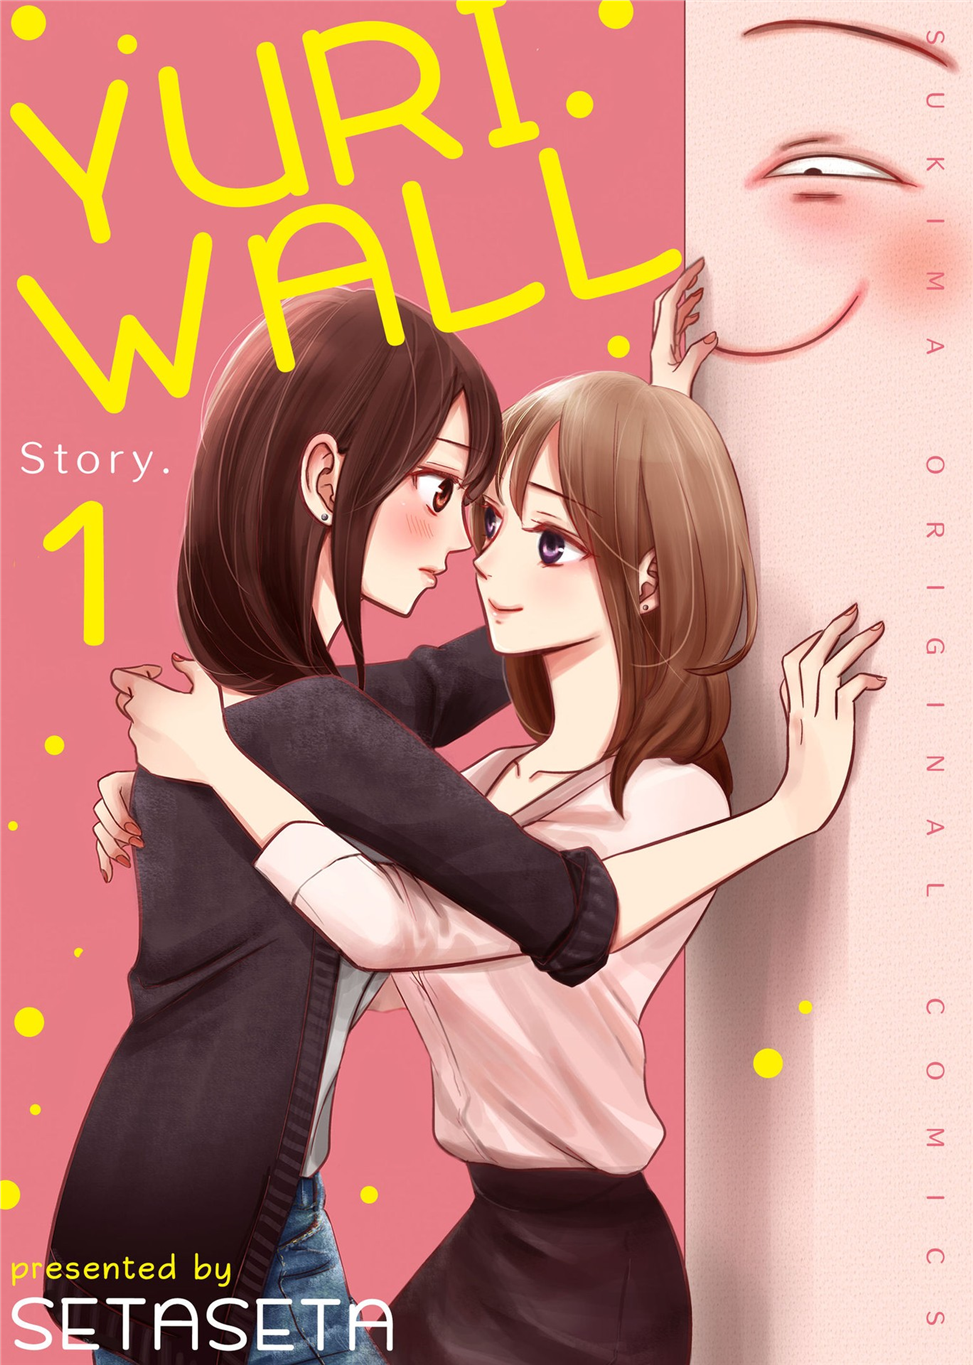 Yuri Wall Story. 1